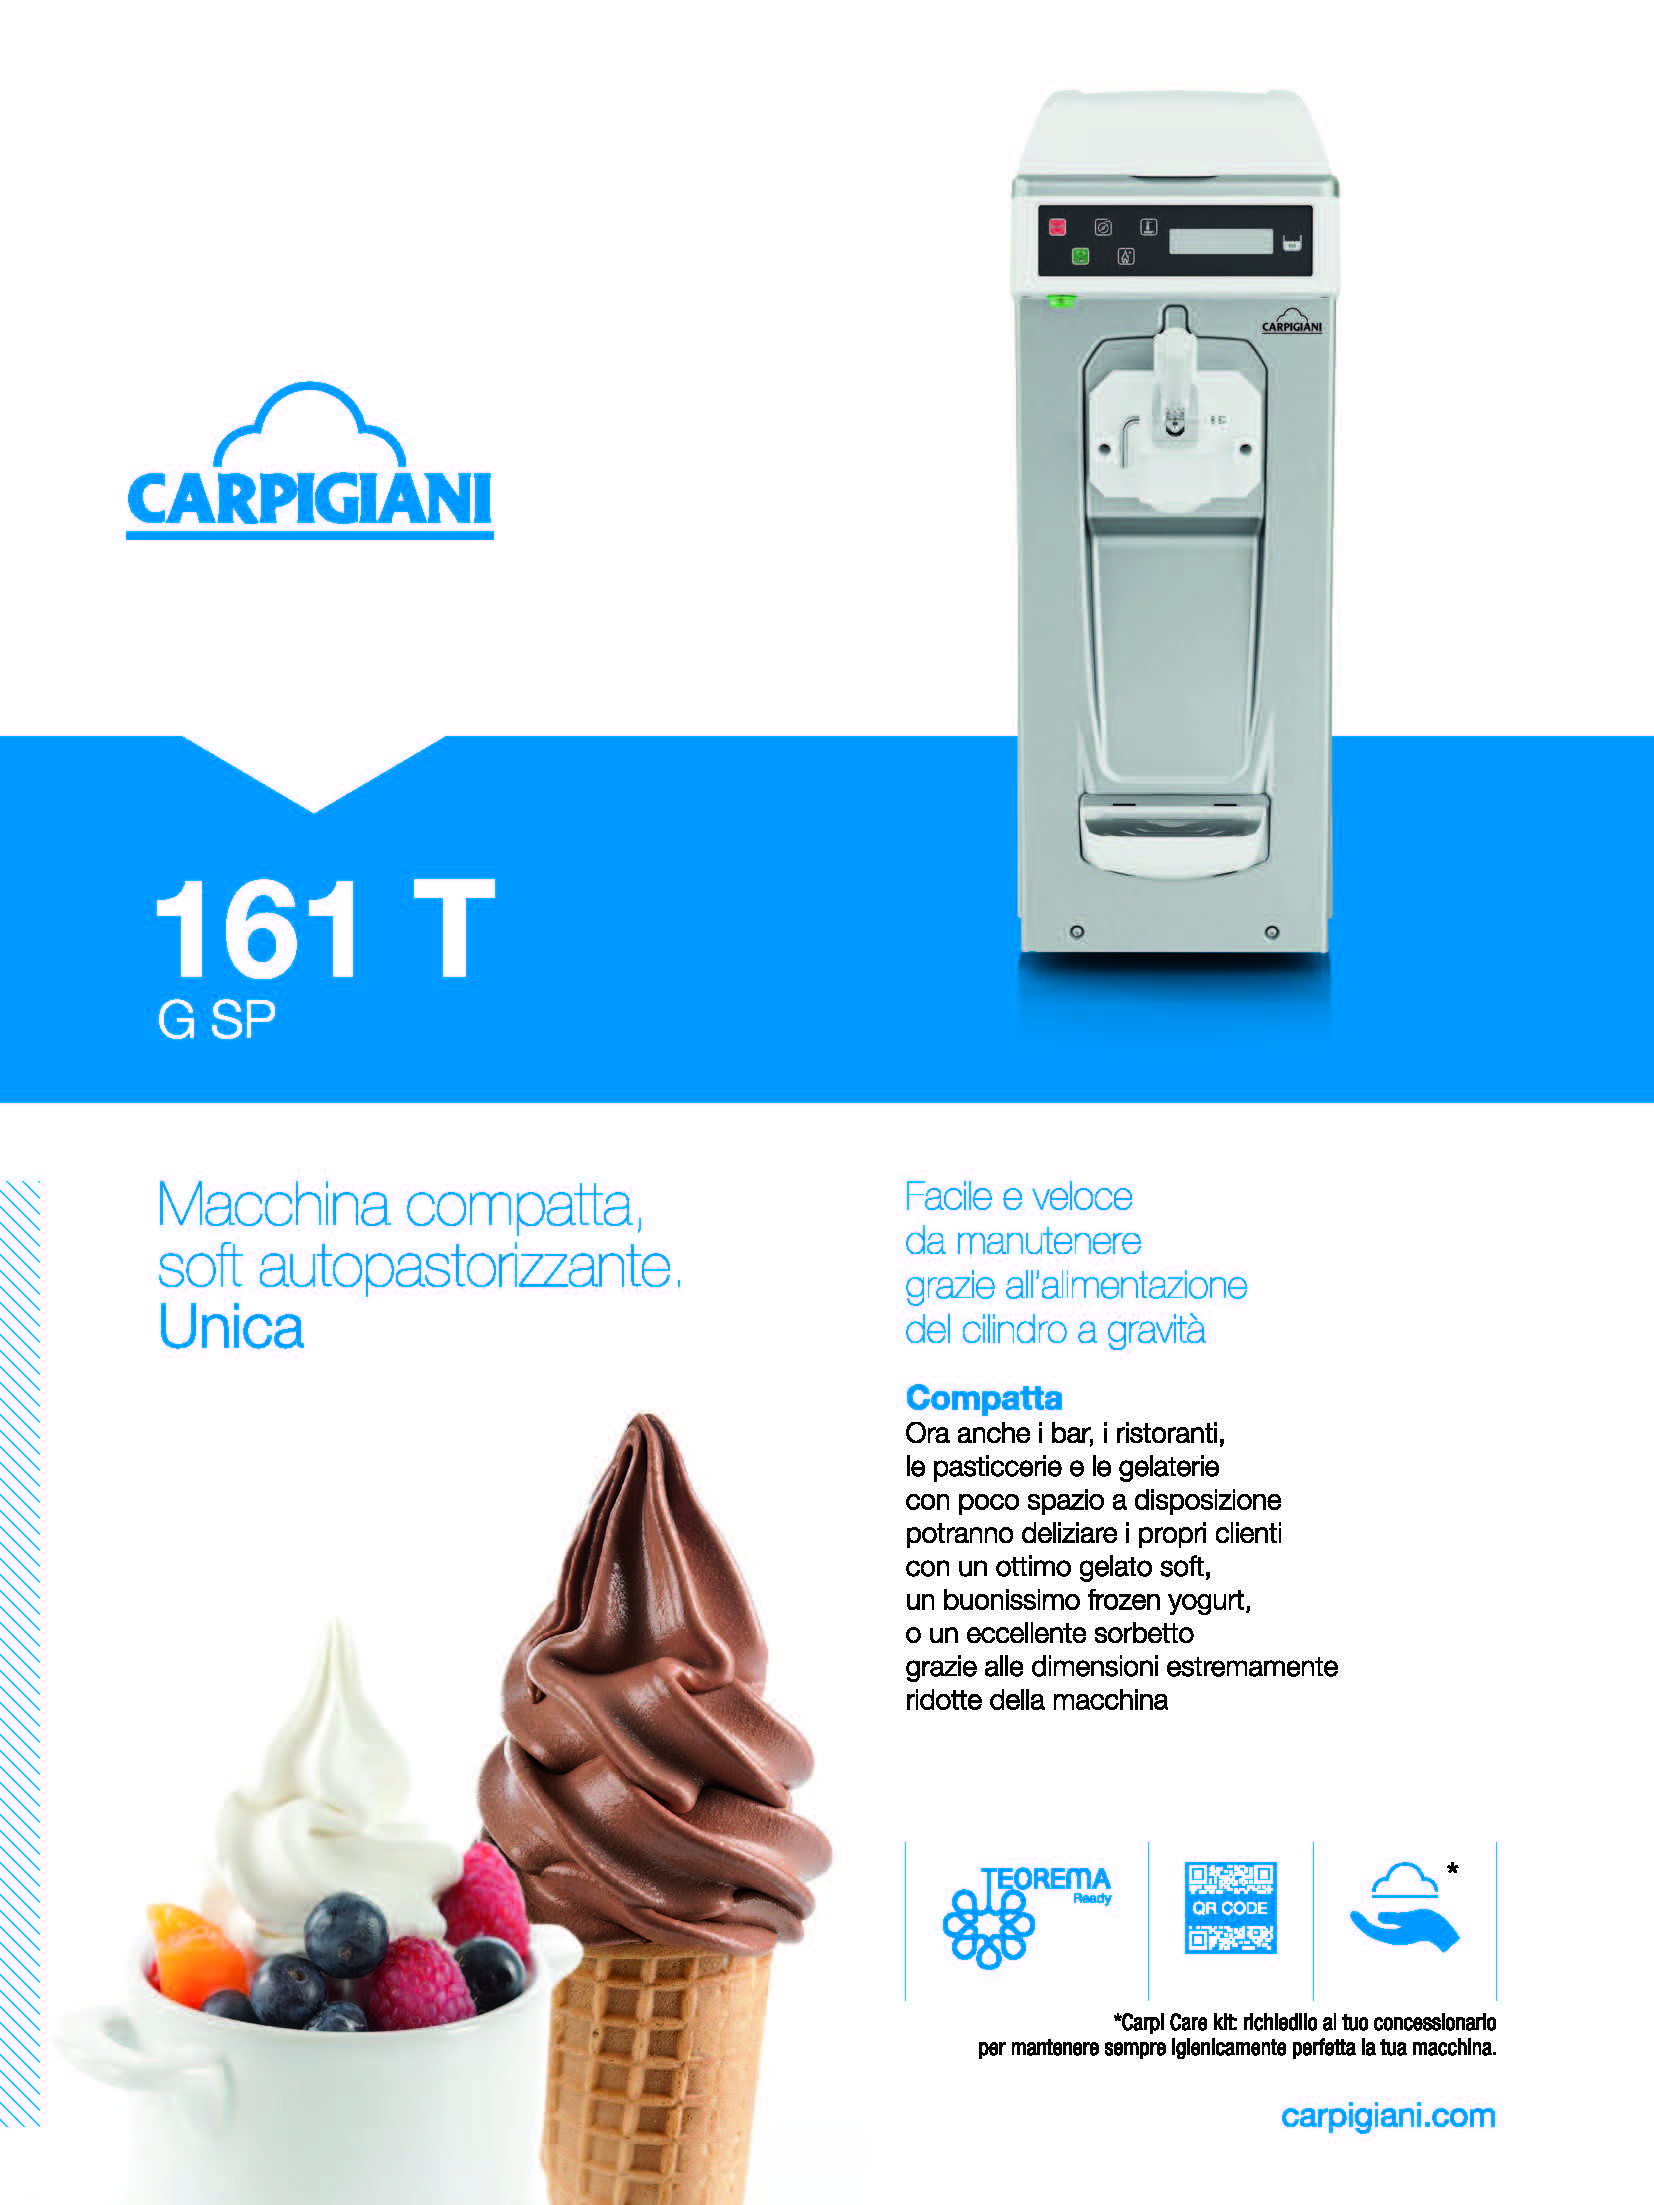 Carpigiani – 161 T SP